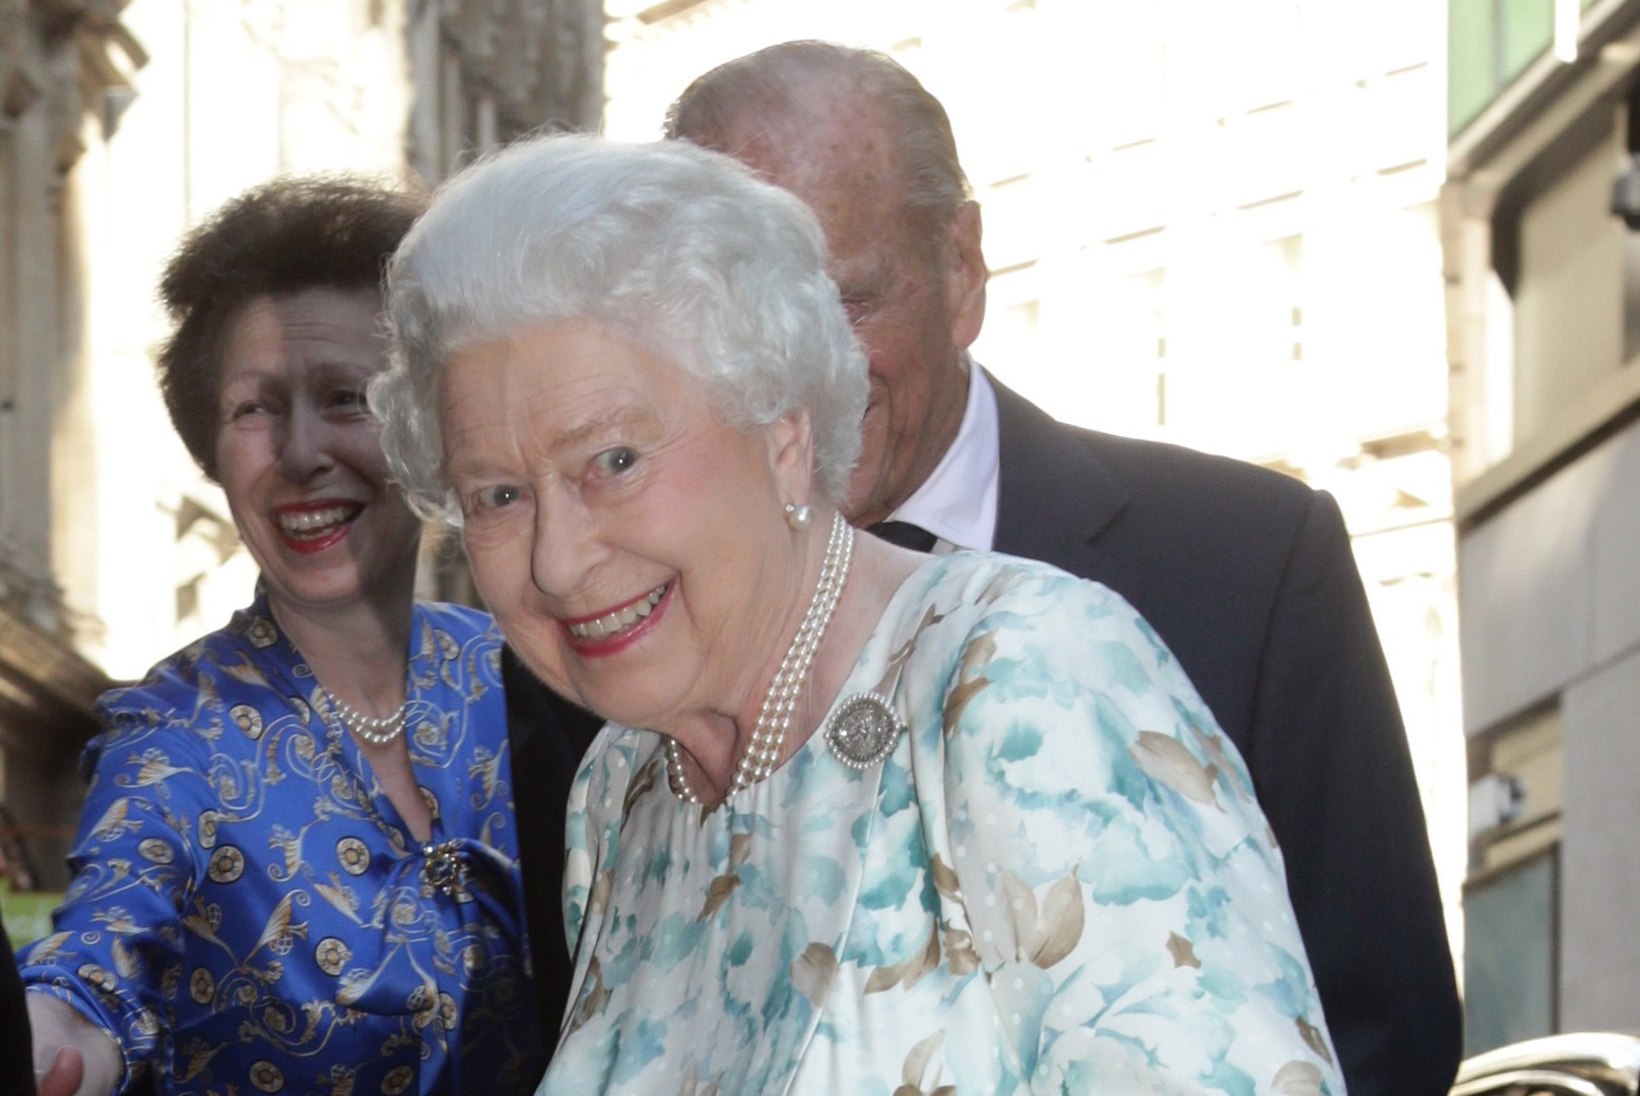 Kuninganna Elizabeth II privaatne sünnipäevapidu